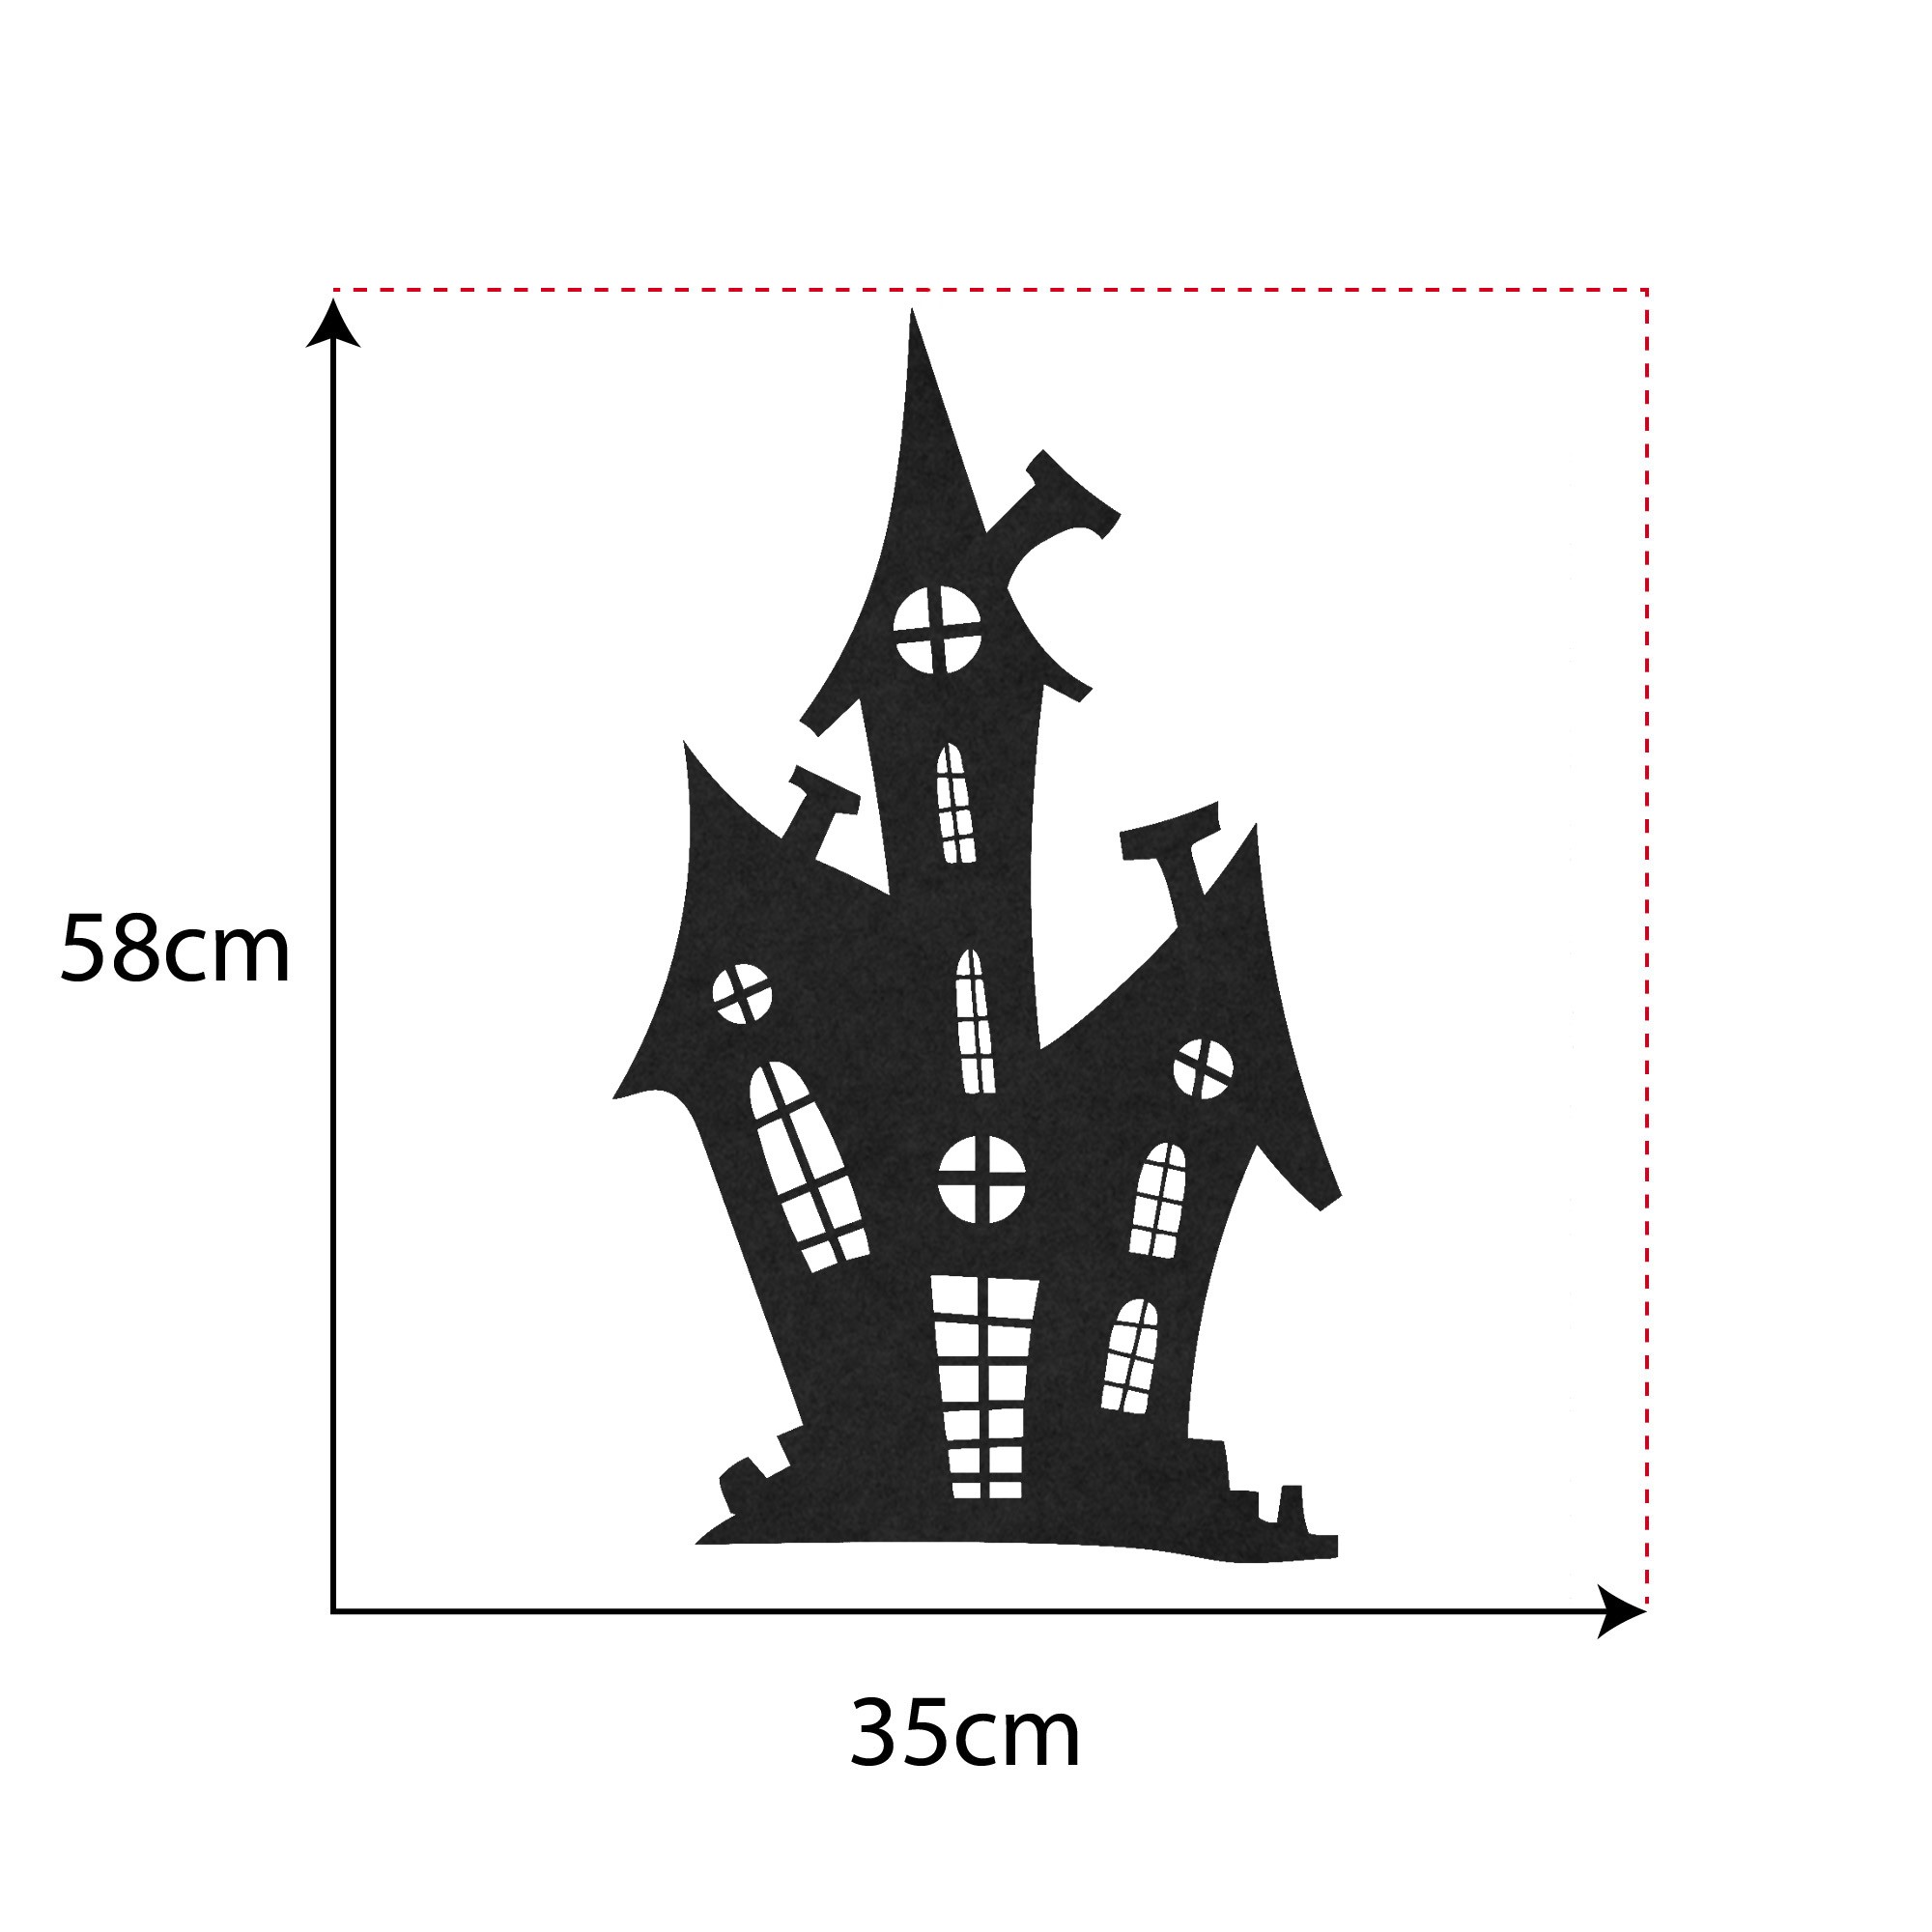 Casa stregata Halloween - Decorazione in feltro - 35 x 58 cm